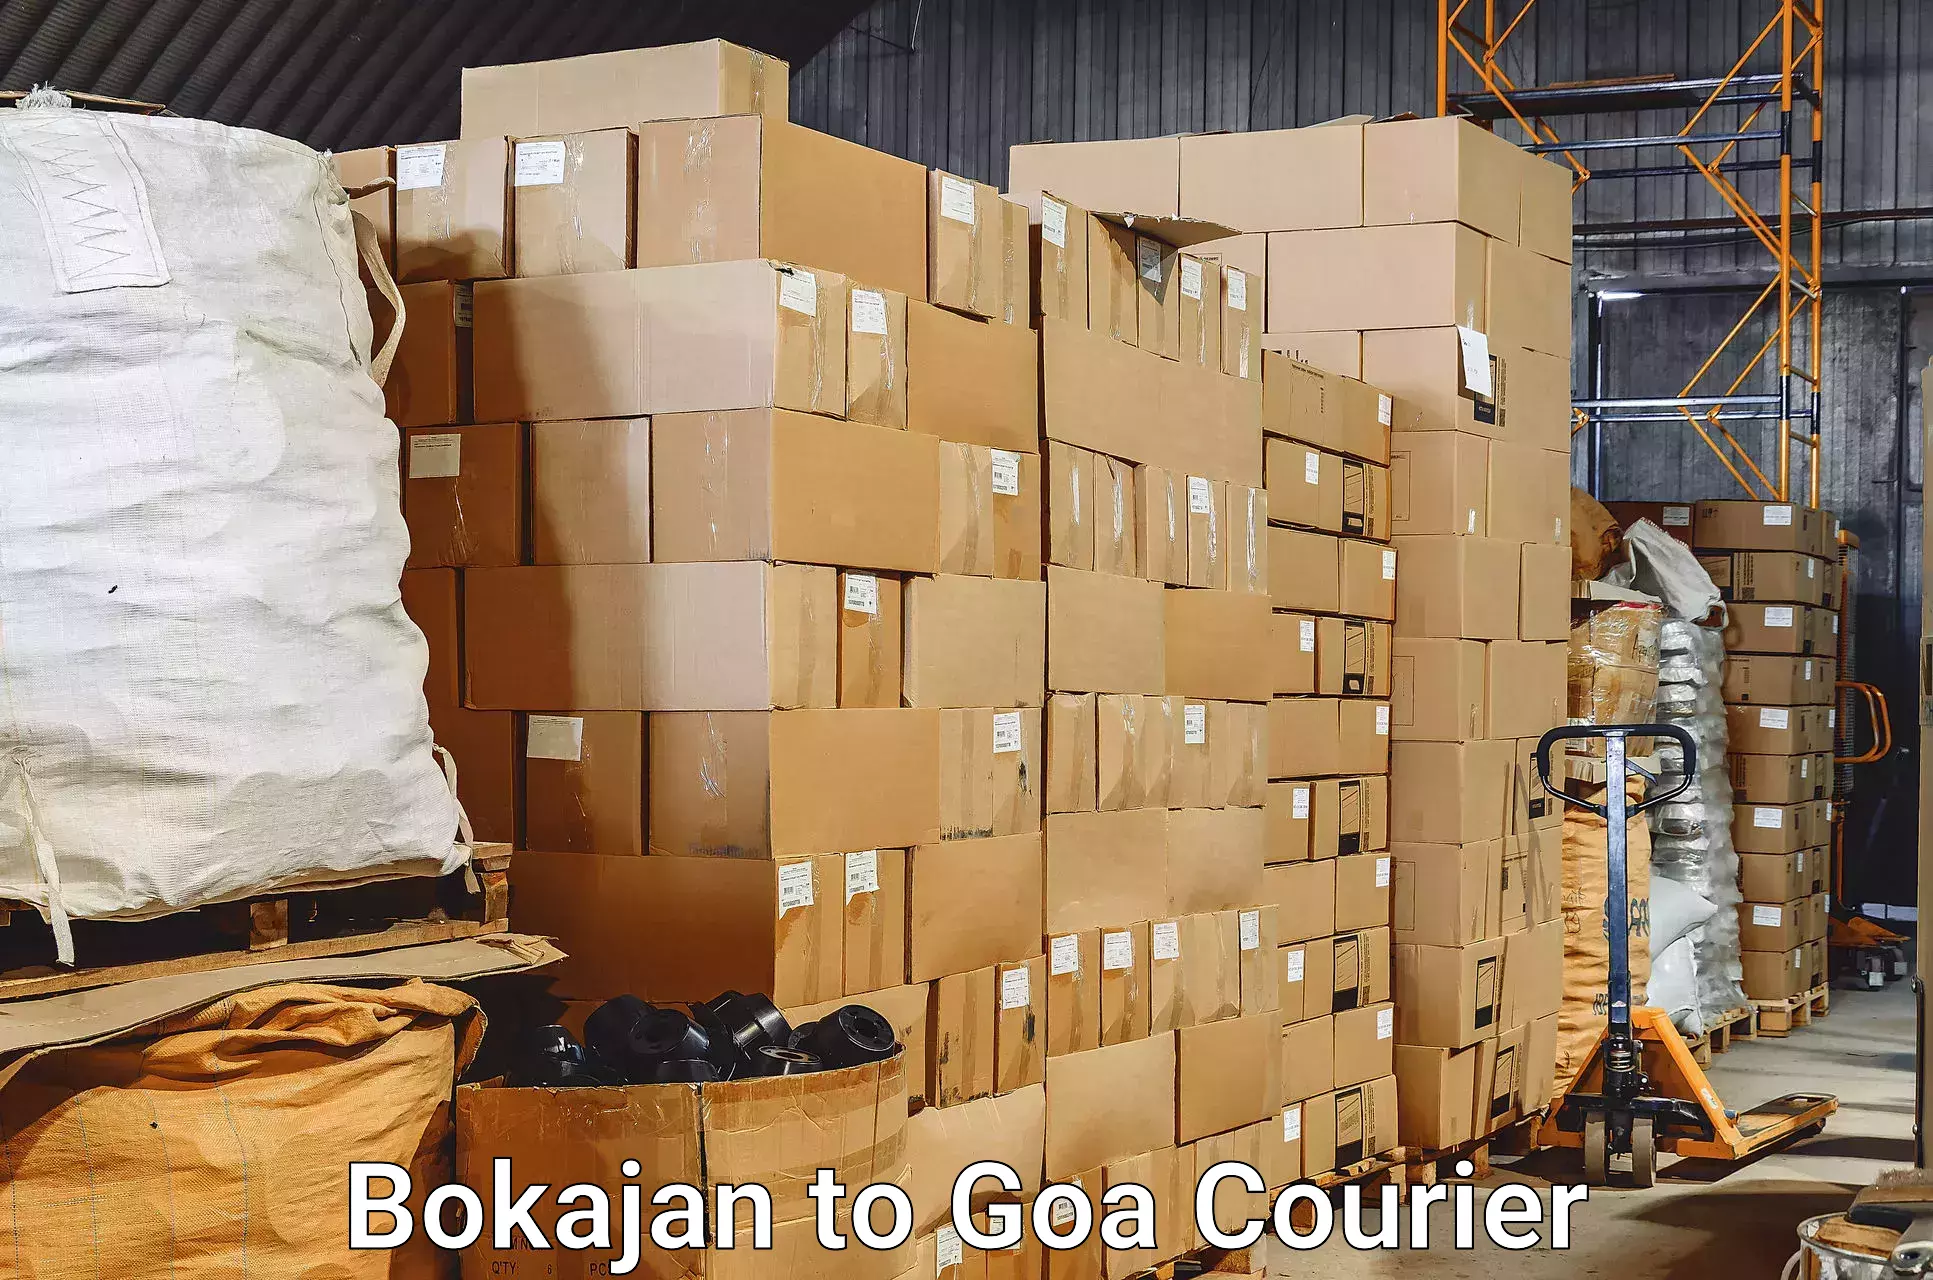 Baggage transport network Bokajan to Ponda